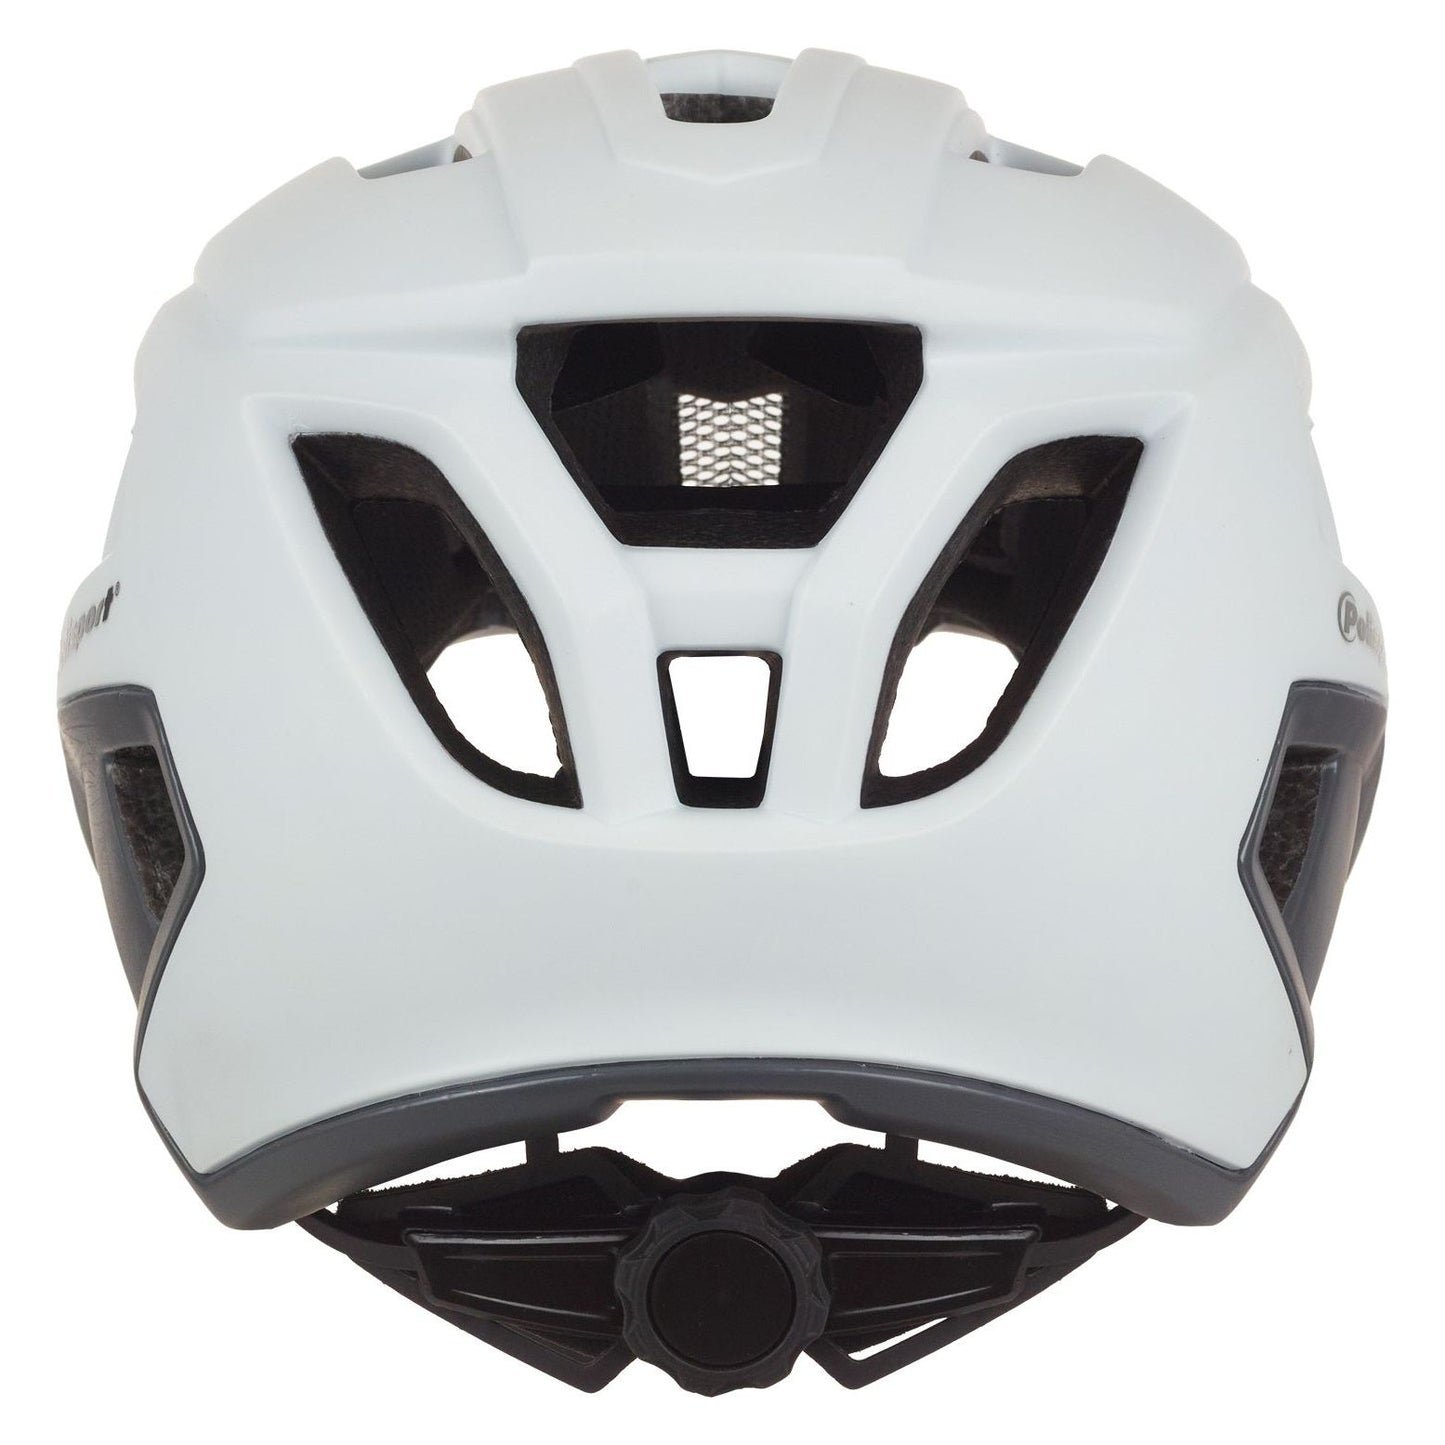 Polispgoudt Mountain Pro Bicycle Helmet L 58-61 cm Grigio bianco